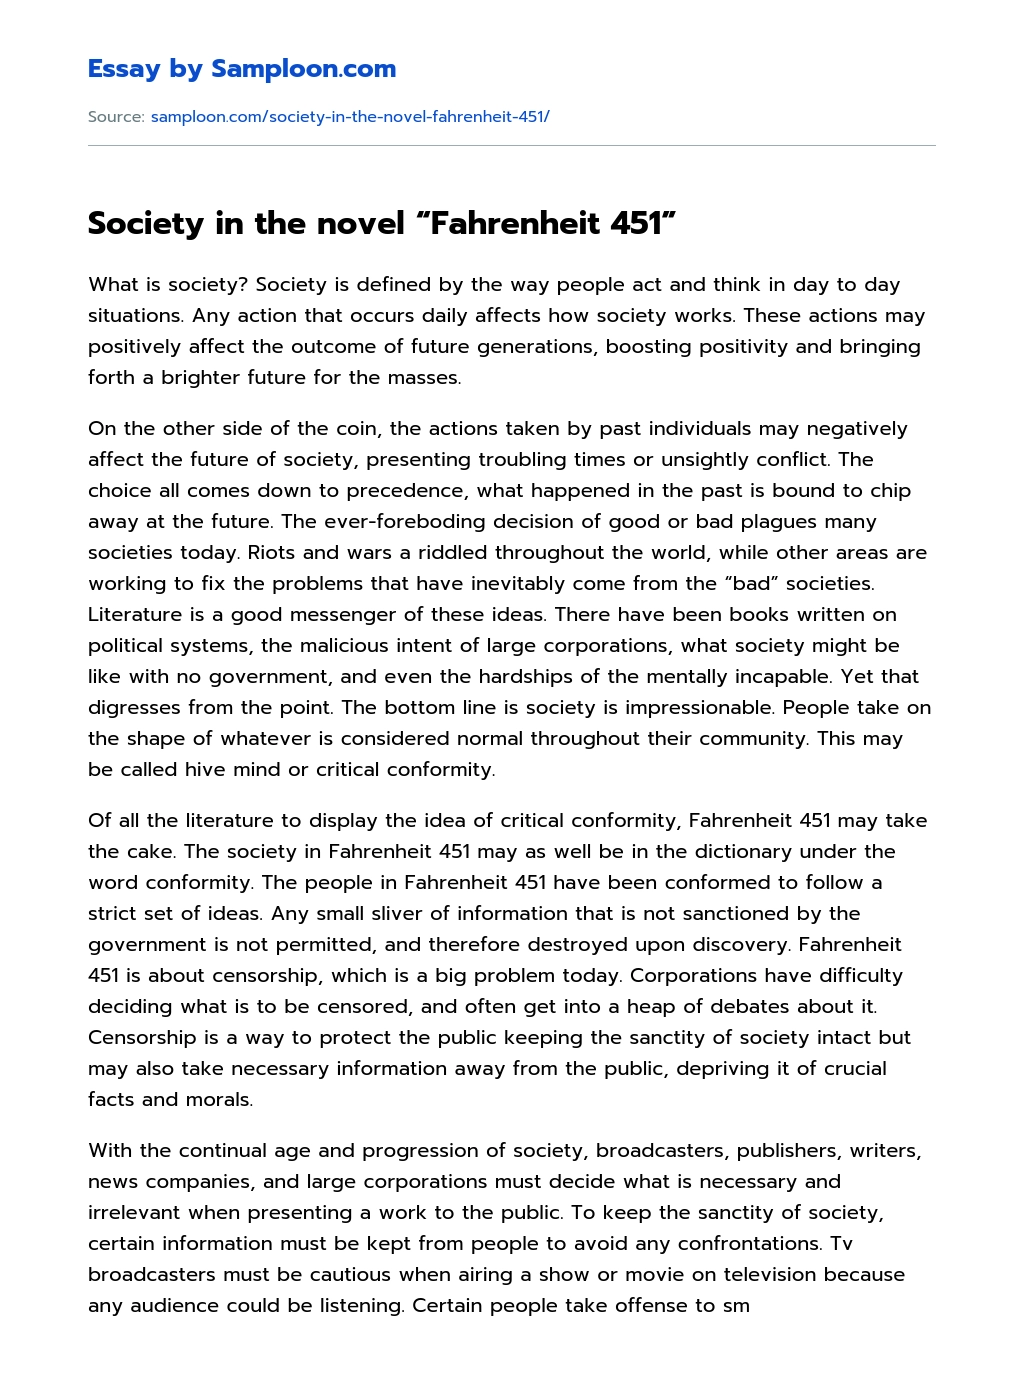 Society in the novel “Fahrenheit 451” essay